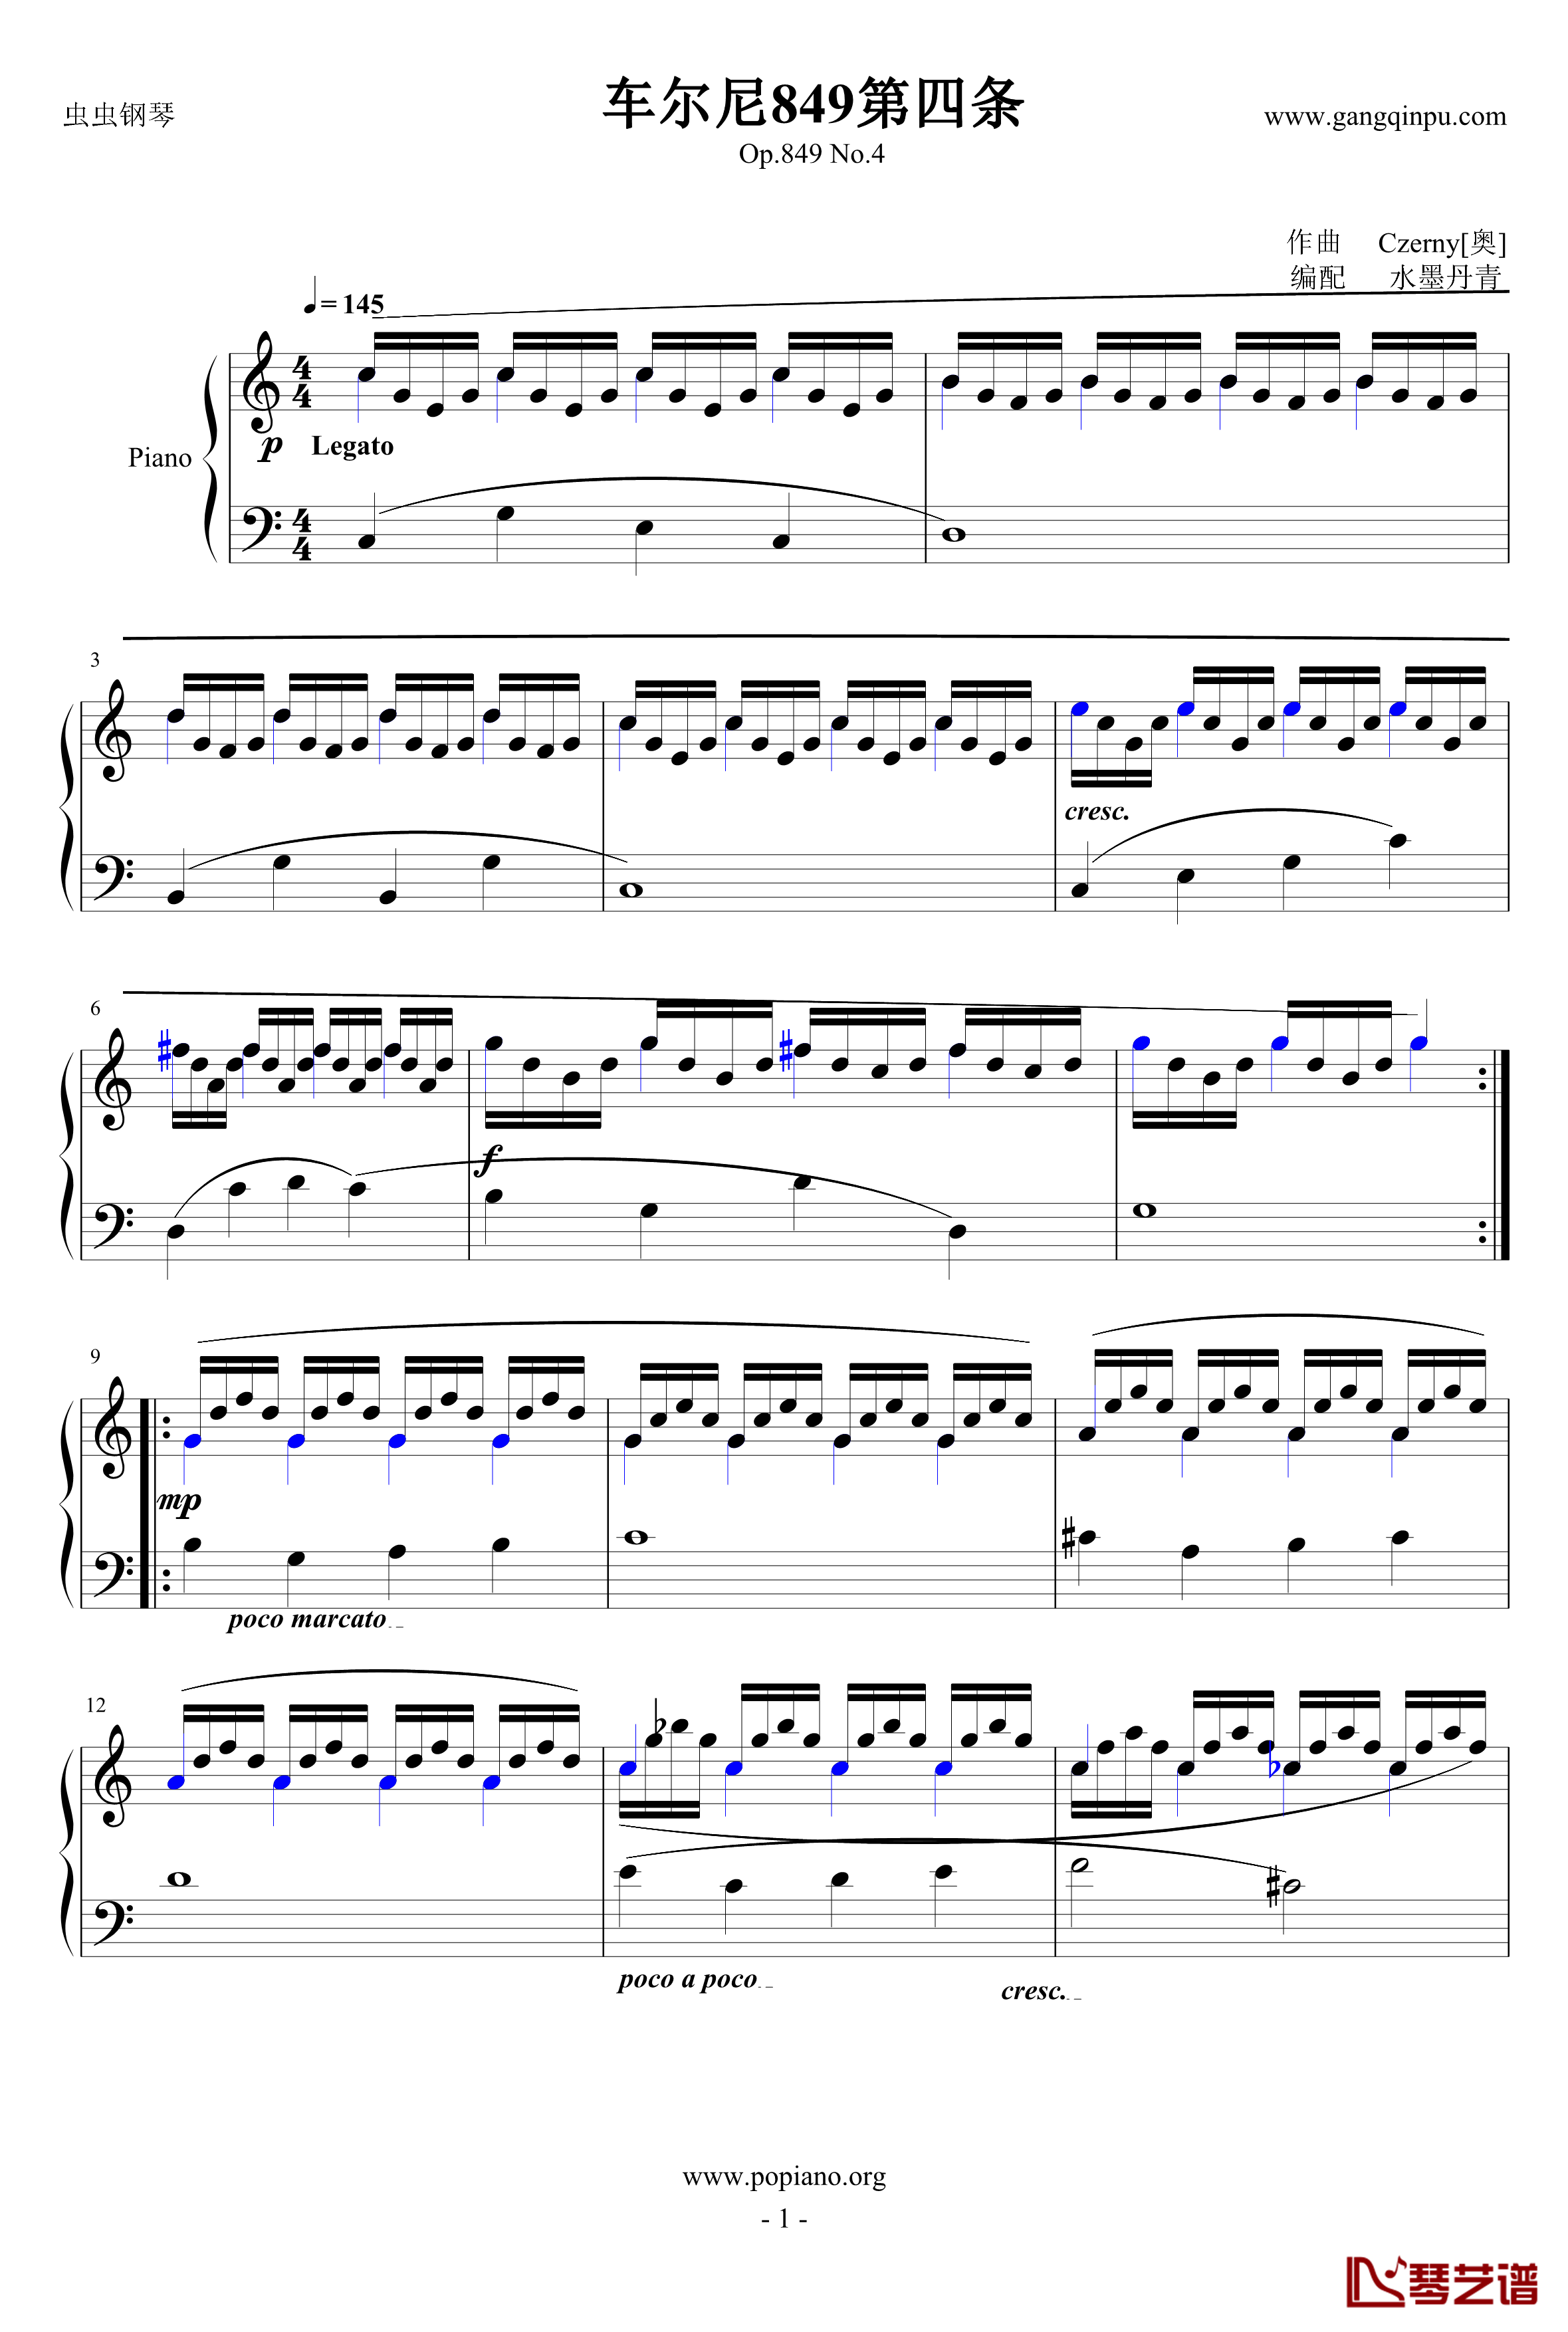 车尔尼849第四条钢琴谱-Op.849 No.4-Czerny1